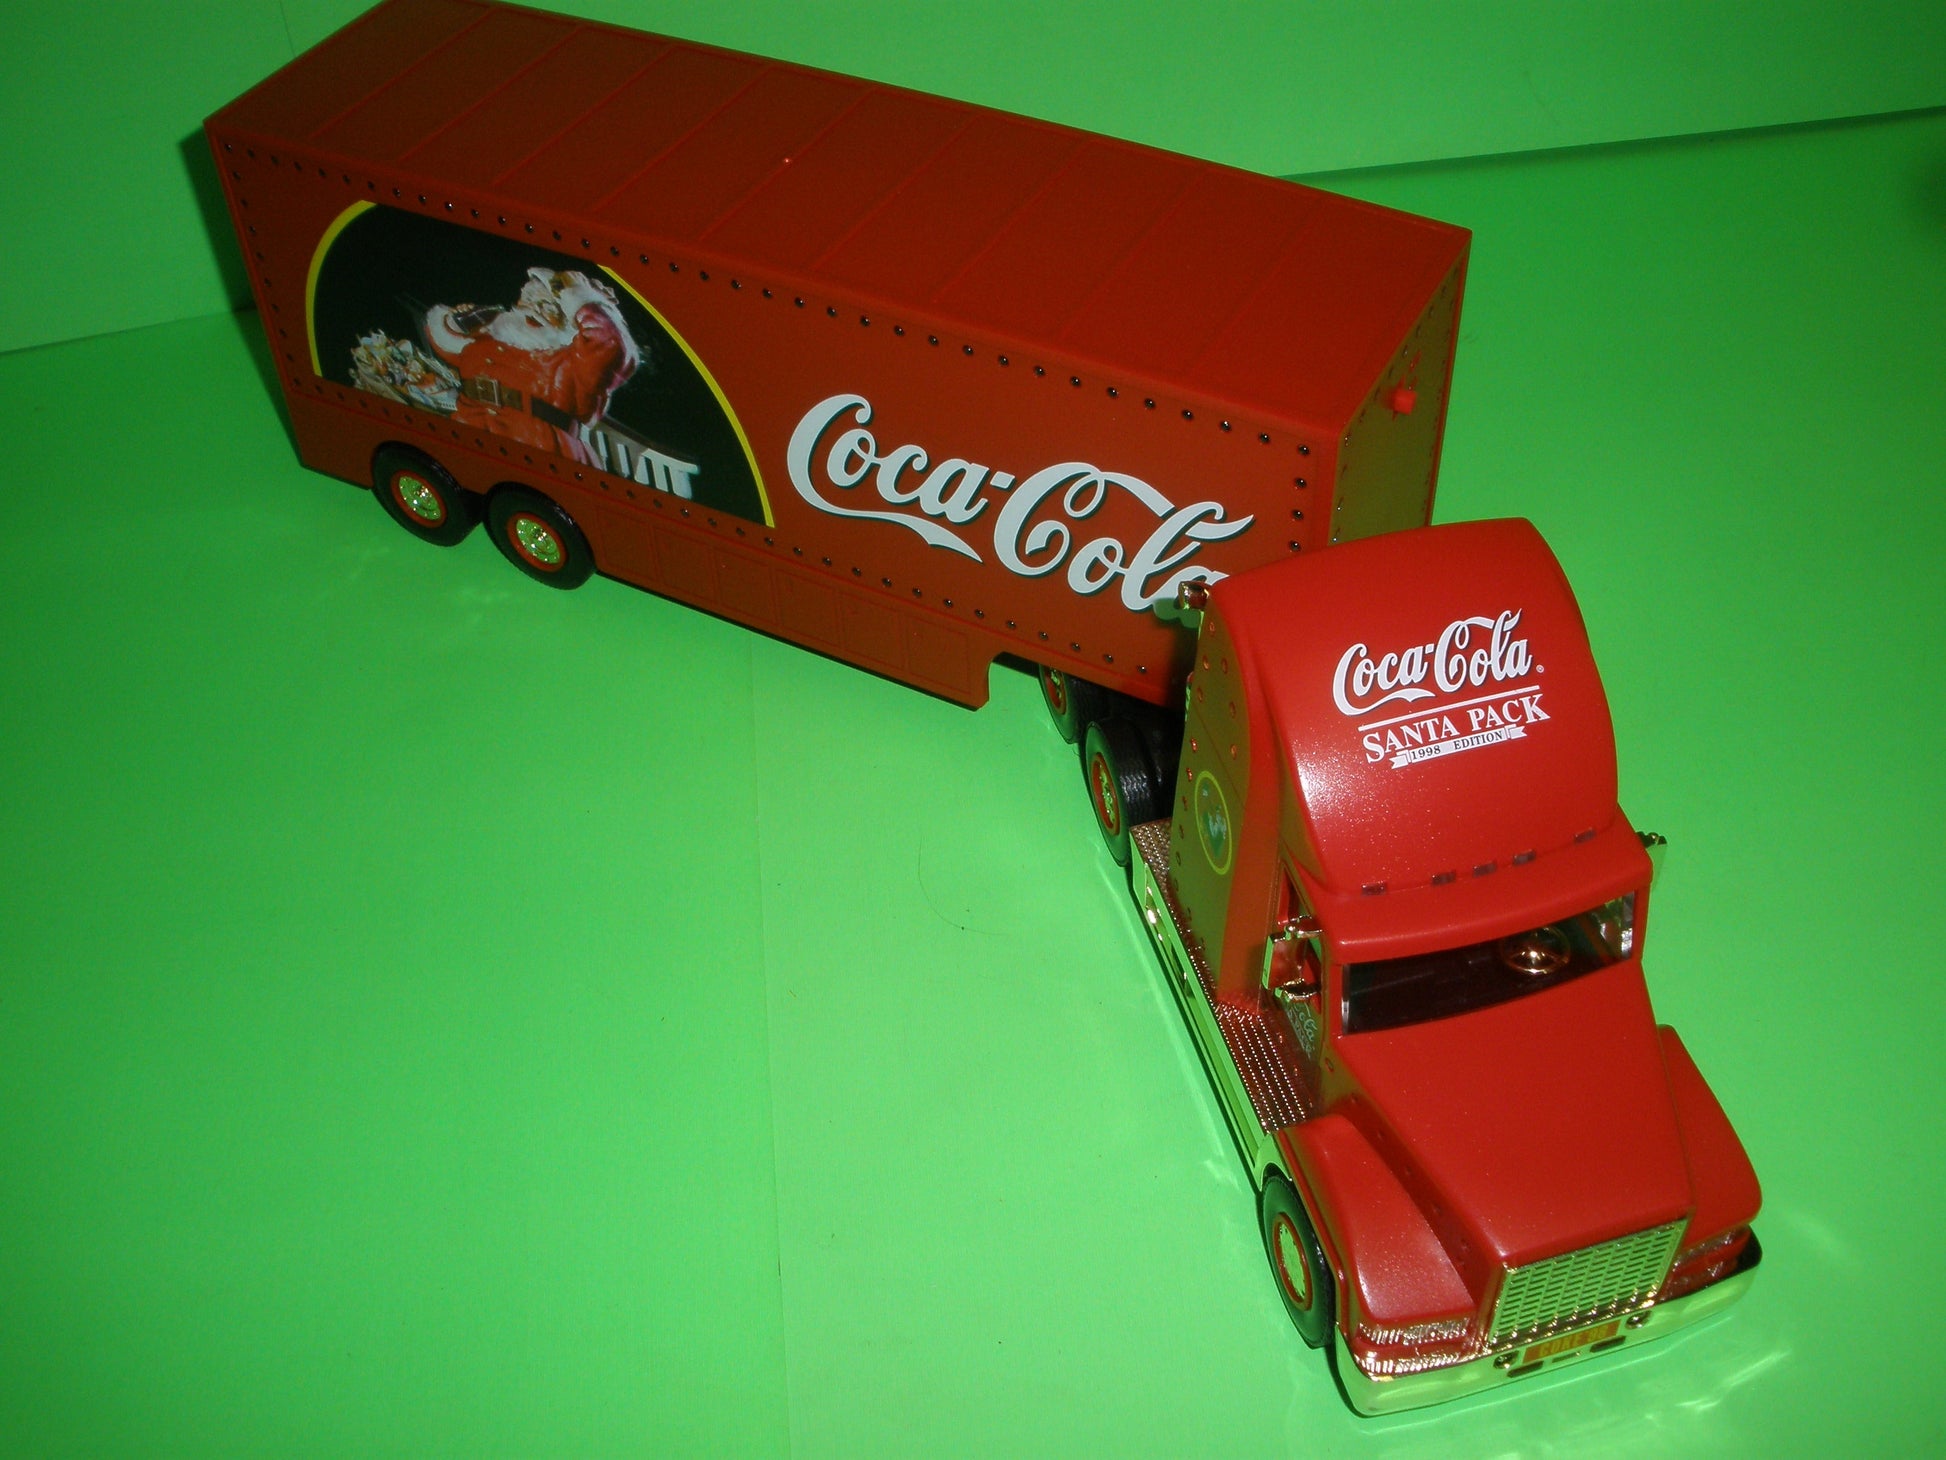 Coca-Cola 1998 Holiday Caravan Truck - Gold Version